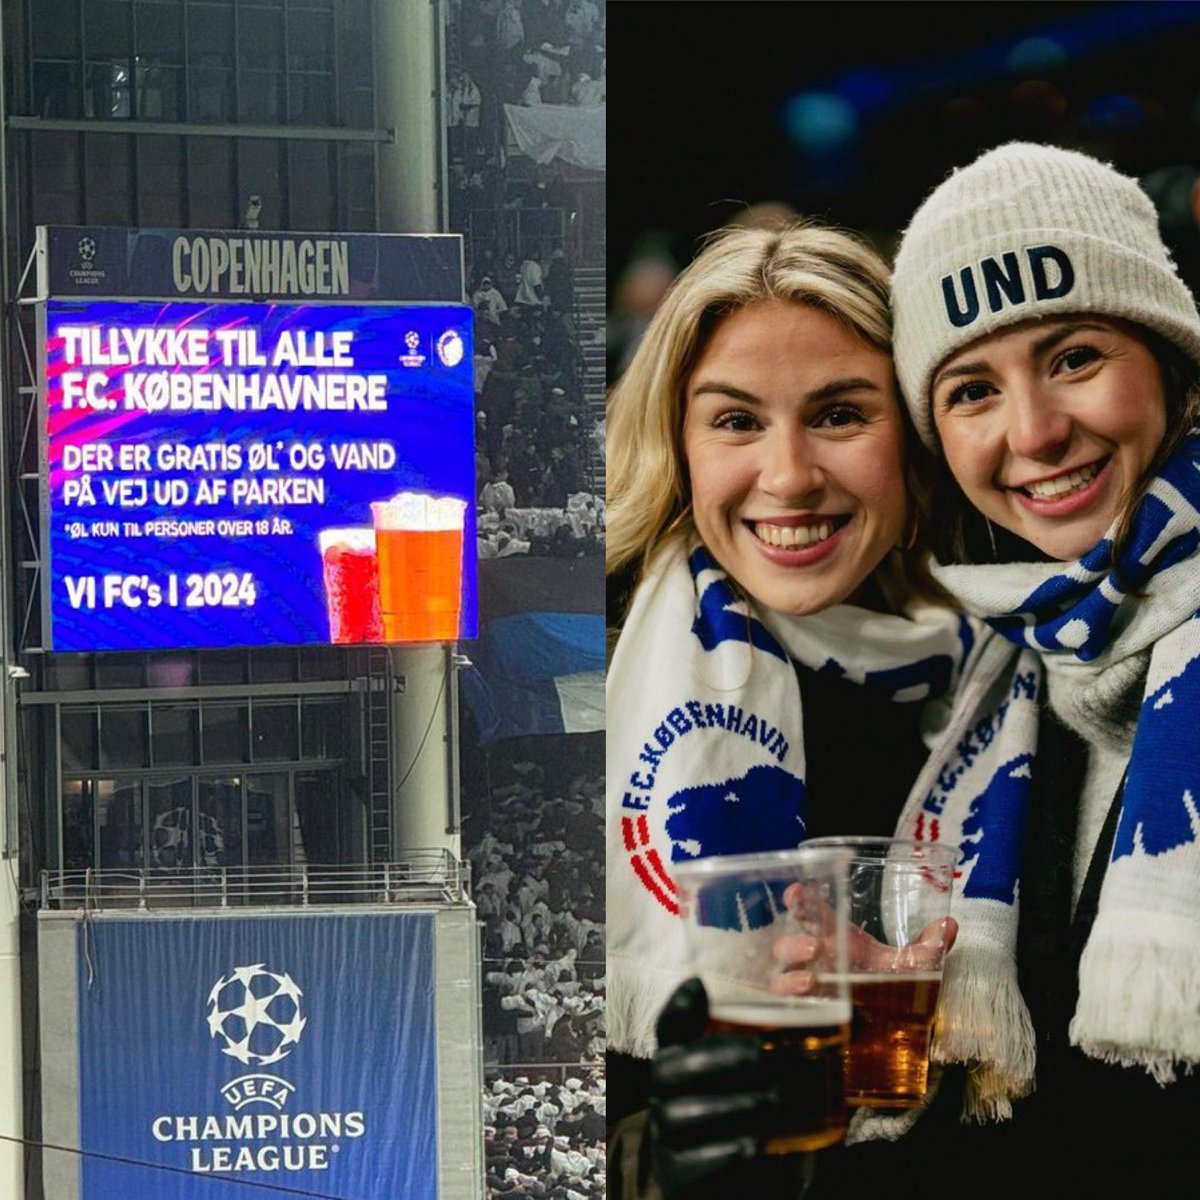 Copenhague clasificó a octavos de Champions League tras 13 años, al vencer al Galatasaray. Al finalizar el partido, en las pantallas del estadio, se anunció cerveza gratis para todos los hinchas, para celebrar. ¿Copenhague? Tu club, mi club. Hermoso.